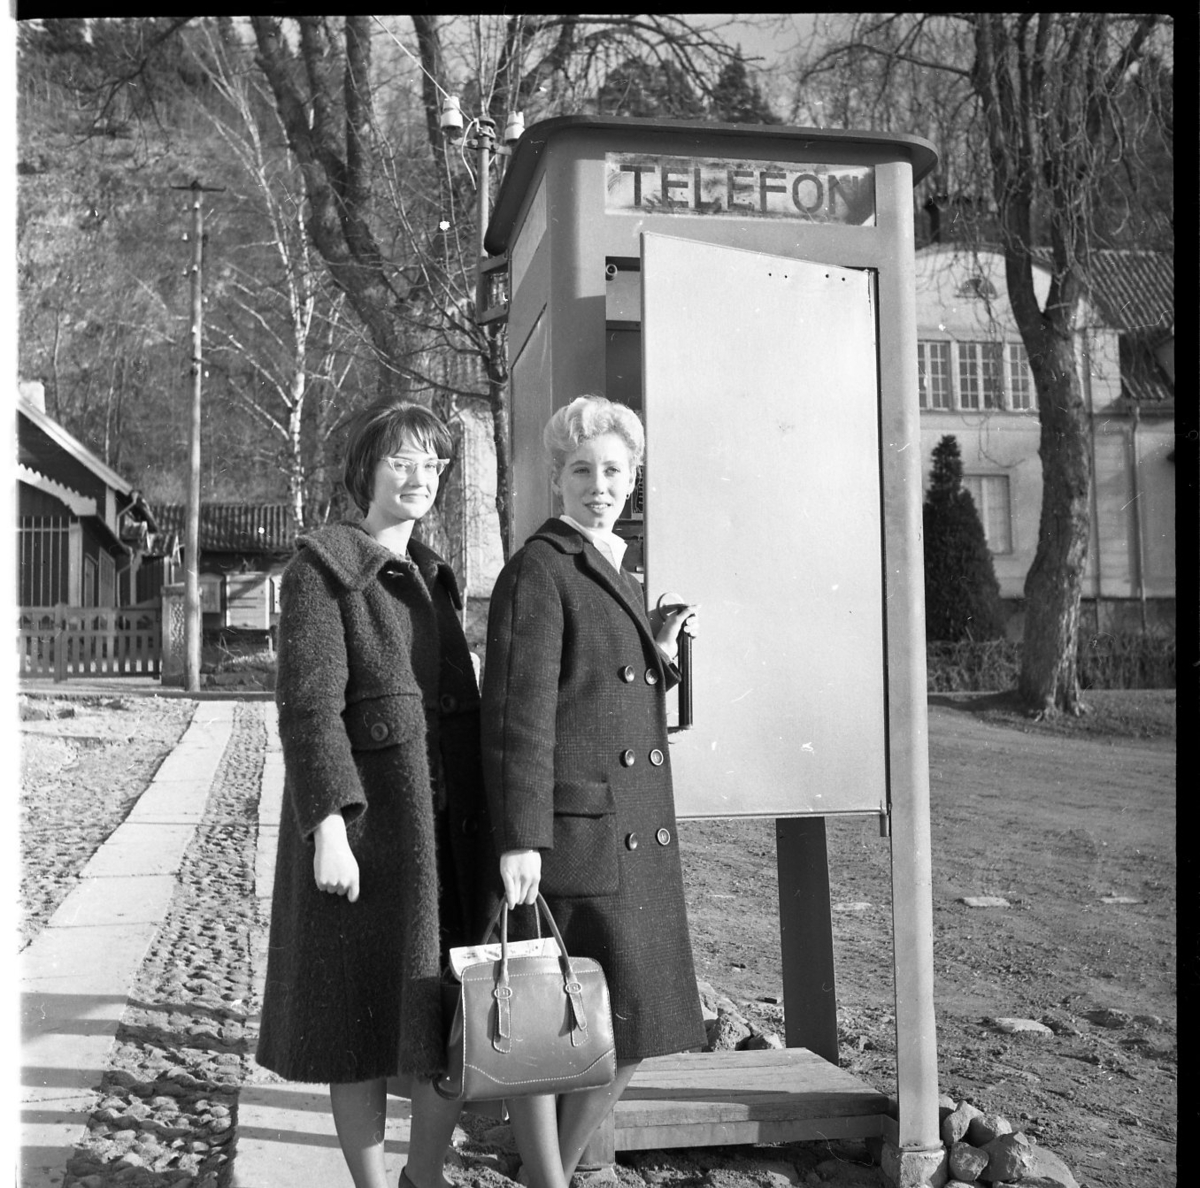 Två kvinnor står utanför en telefonkiosk. De bär kappor och har tuperat hår. En av dem bär en handväska och den andra bär ett par glasögon som är typiska för 1960-talet. I bakgrunden syns riksinternatskolan Grennaskolan.